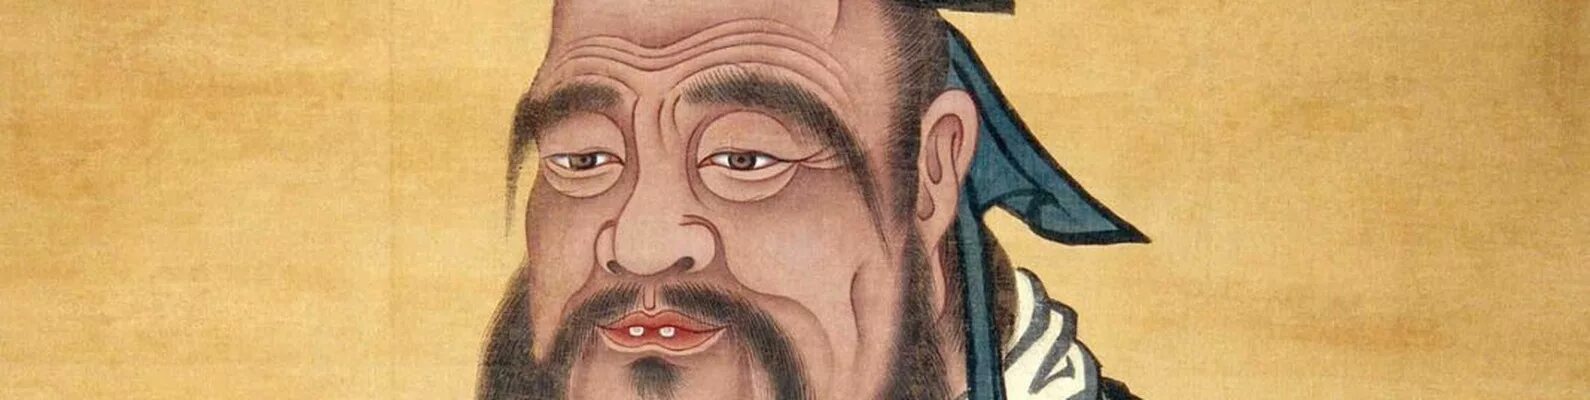 Конфуций. Конфуций внешность. Конфуций портрет. Кано Танью Конфуций.